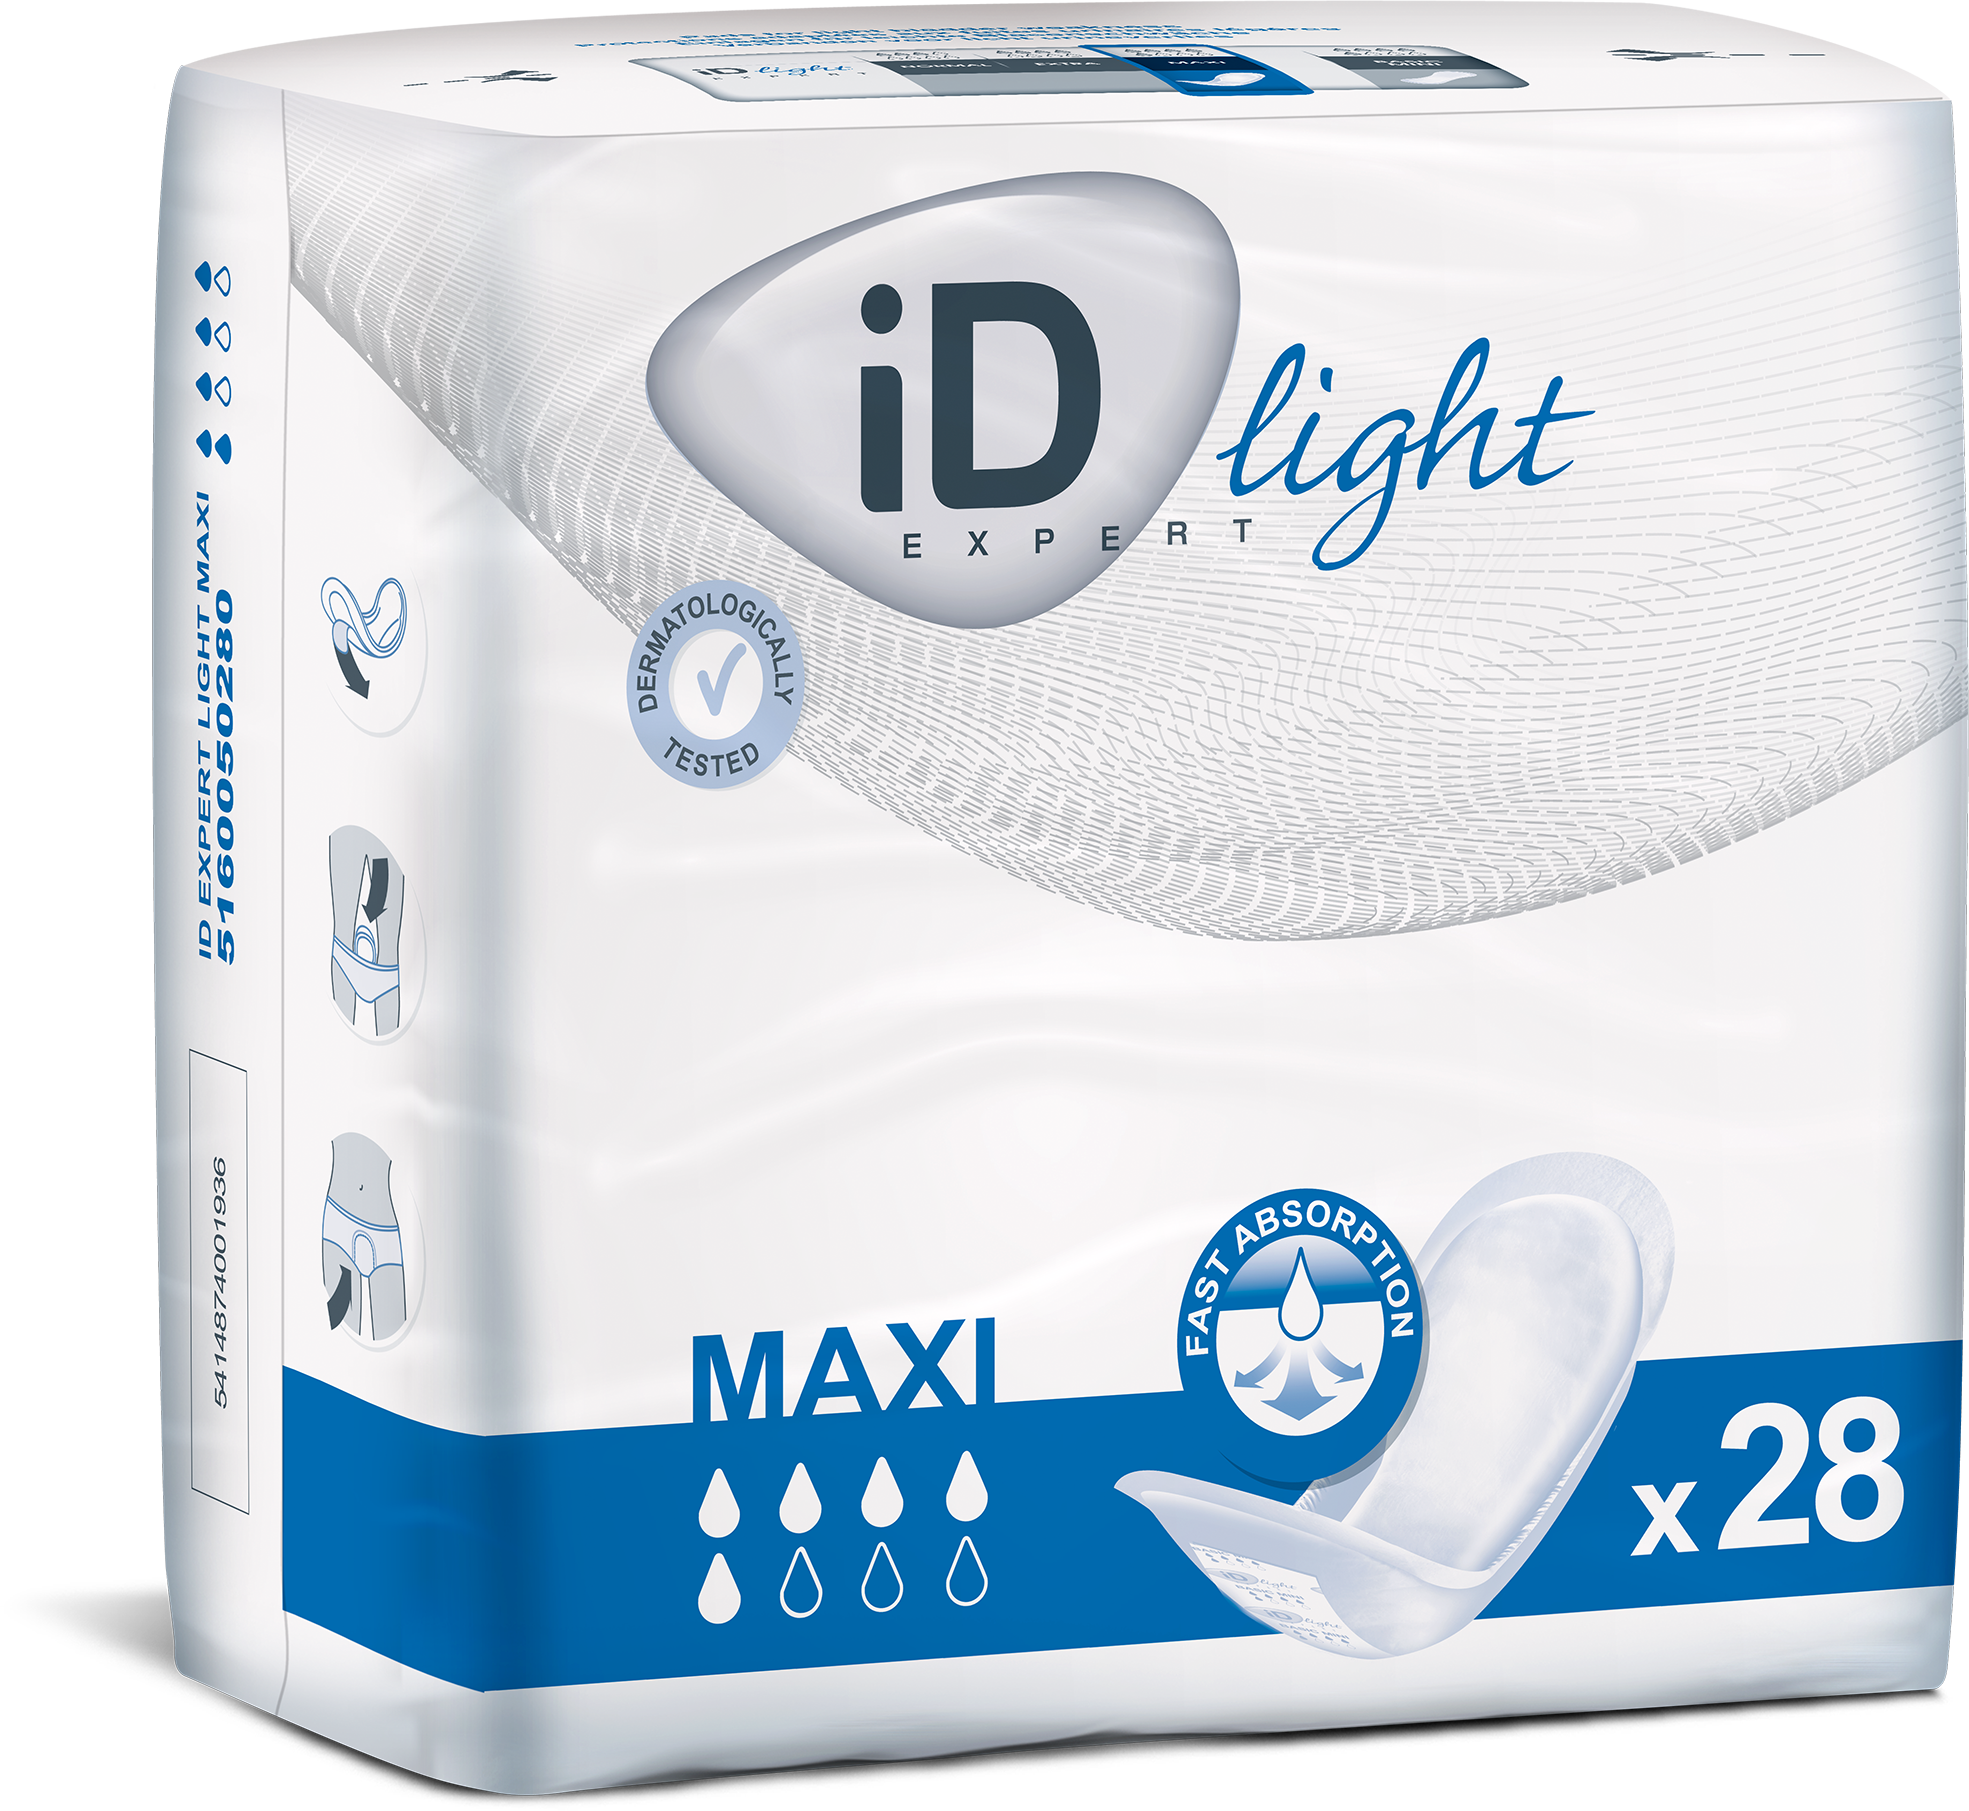 ID EXPERT LIGHT MAXI 405MM